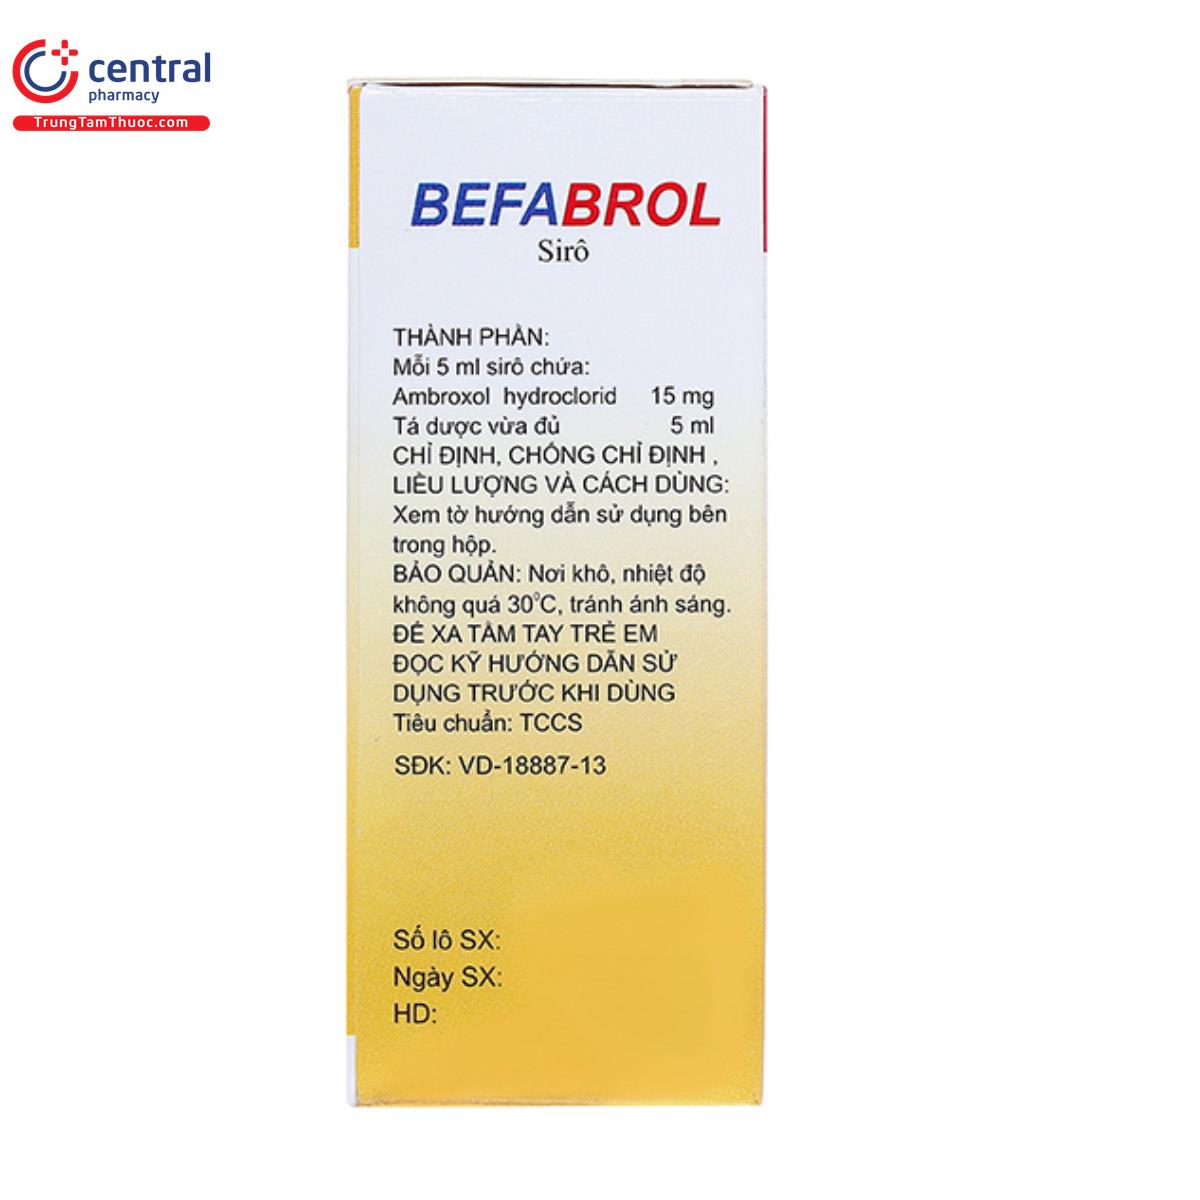 befabrol 30 4 E1305